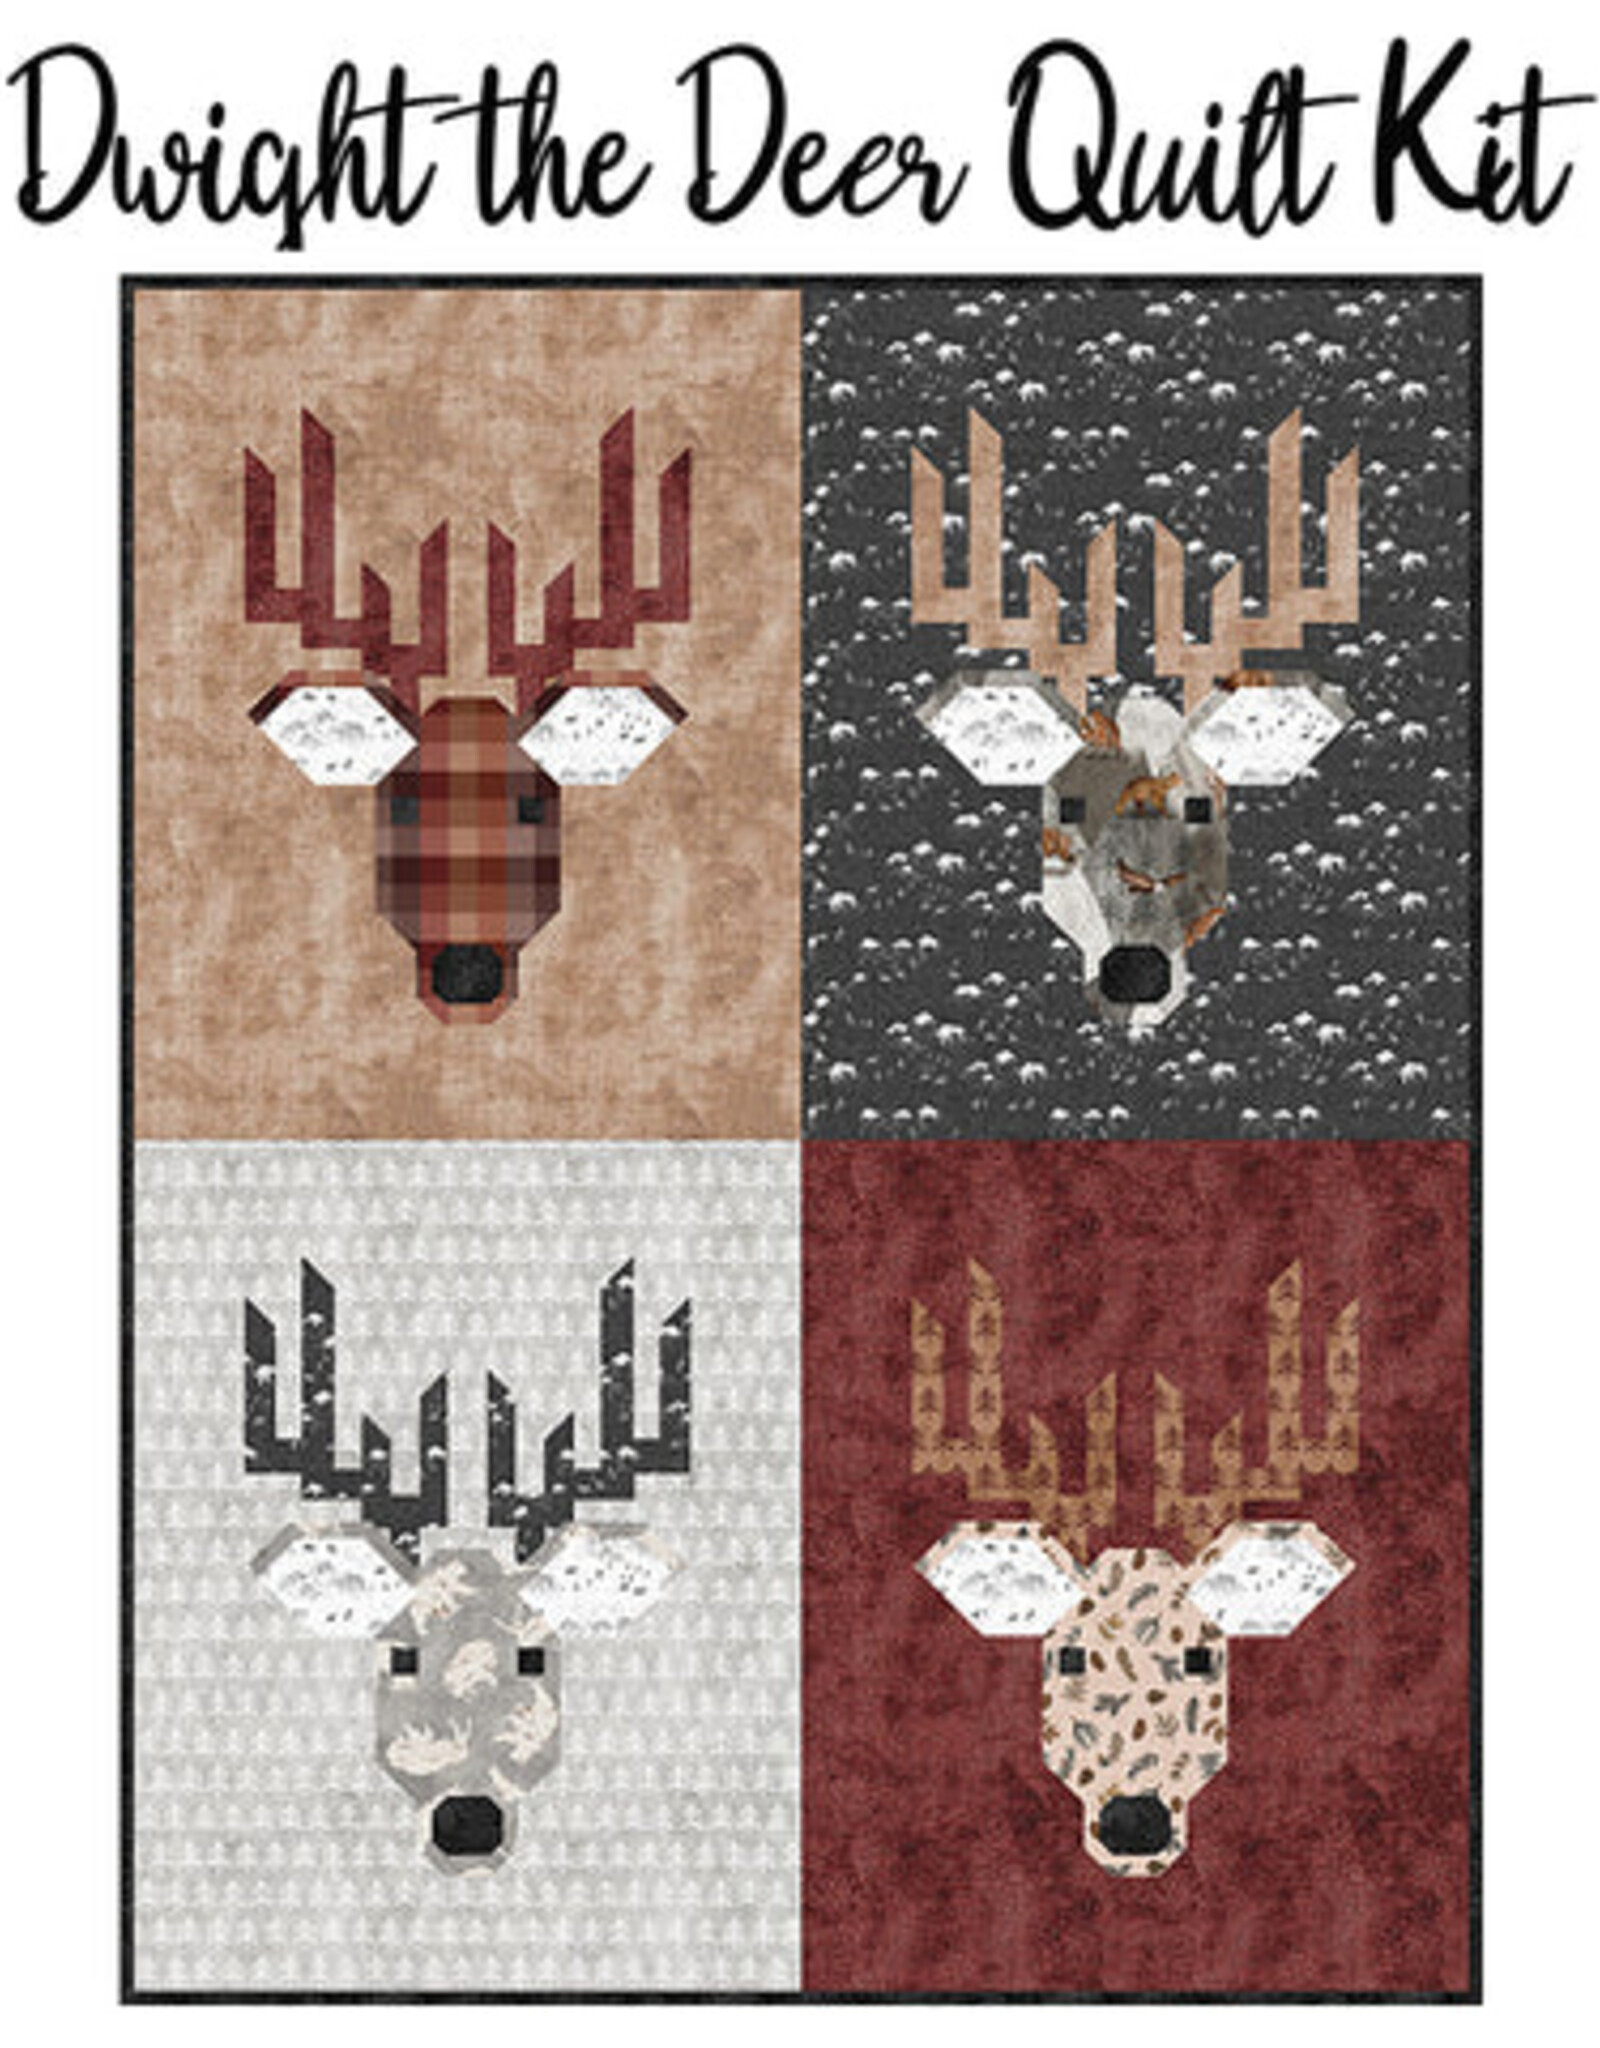 Dwight the Deer Quilt Kit 47 x 60